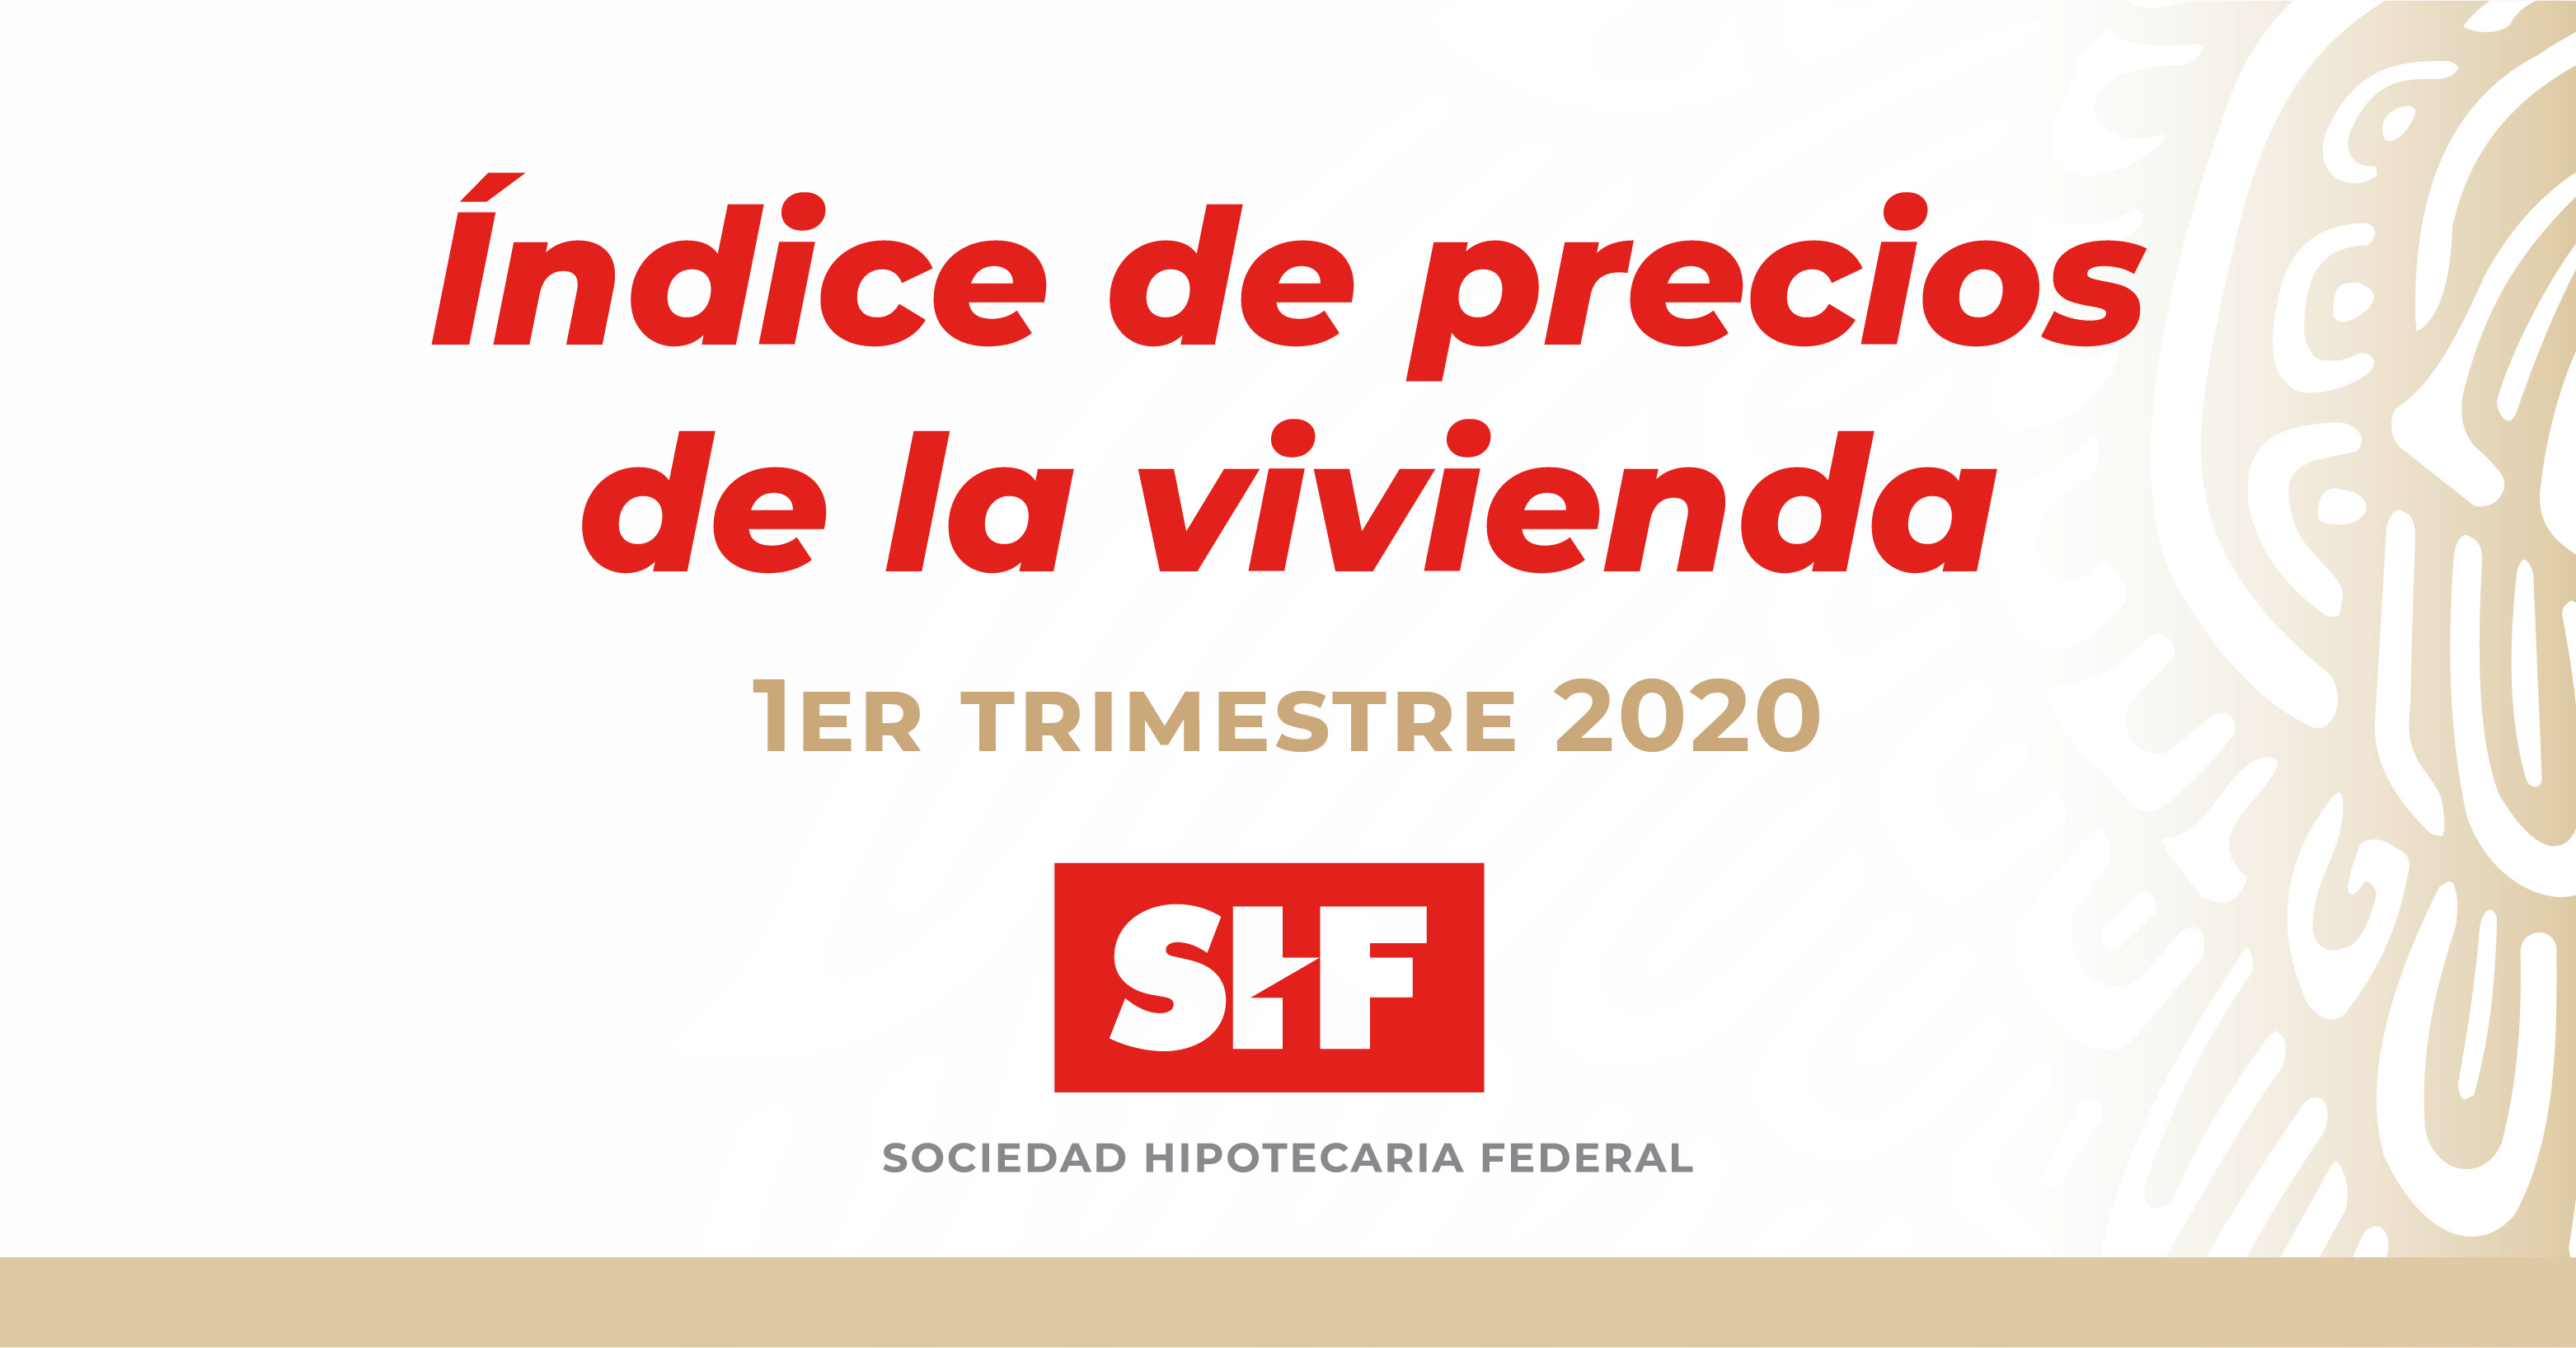 ÍNDICE SHF DE PRECIOS DE LA VIVIENDA EN MÉXICO, PRIMER TRIMESTRE DE 2020 |  Sociedad Hipotecaria Federal | Gobierno 